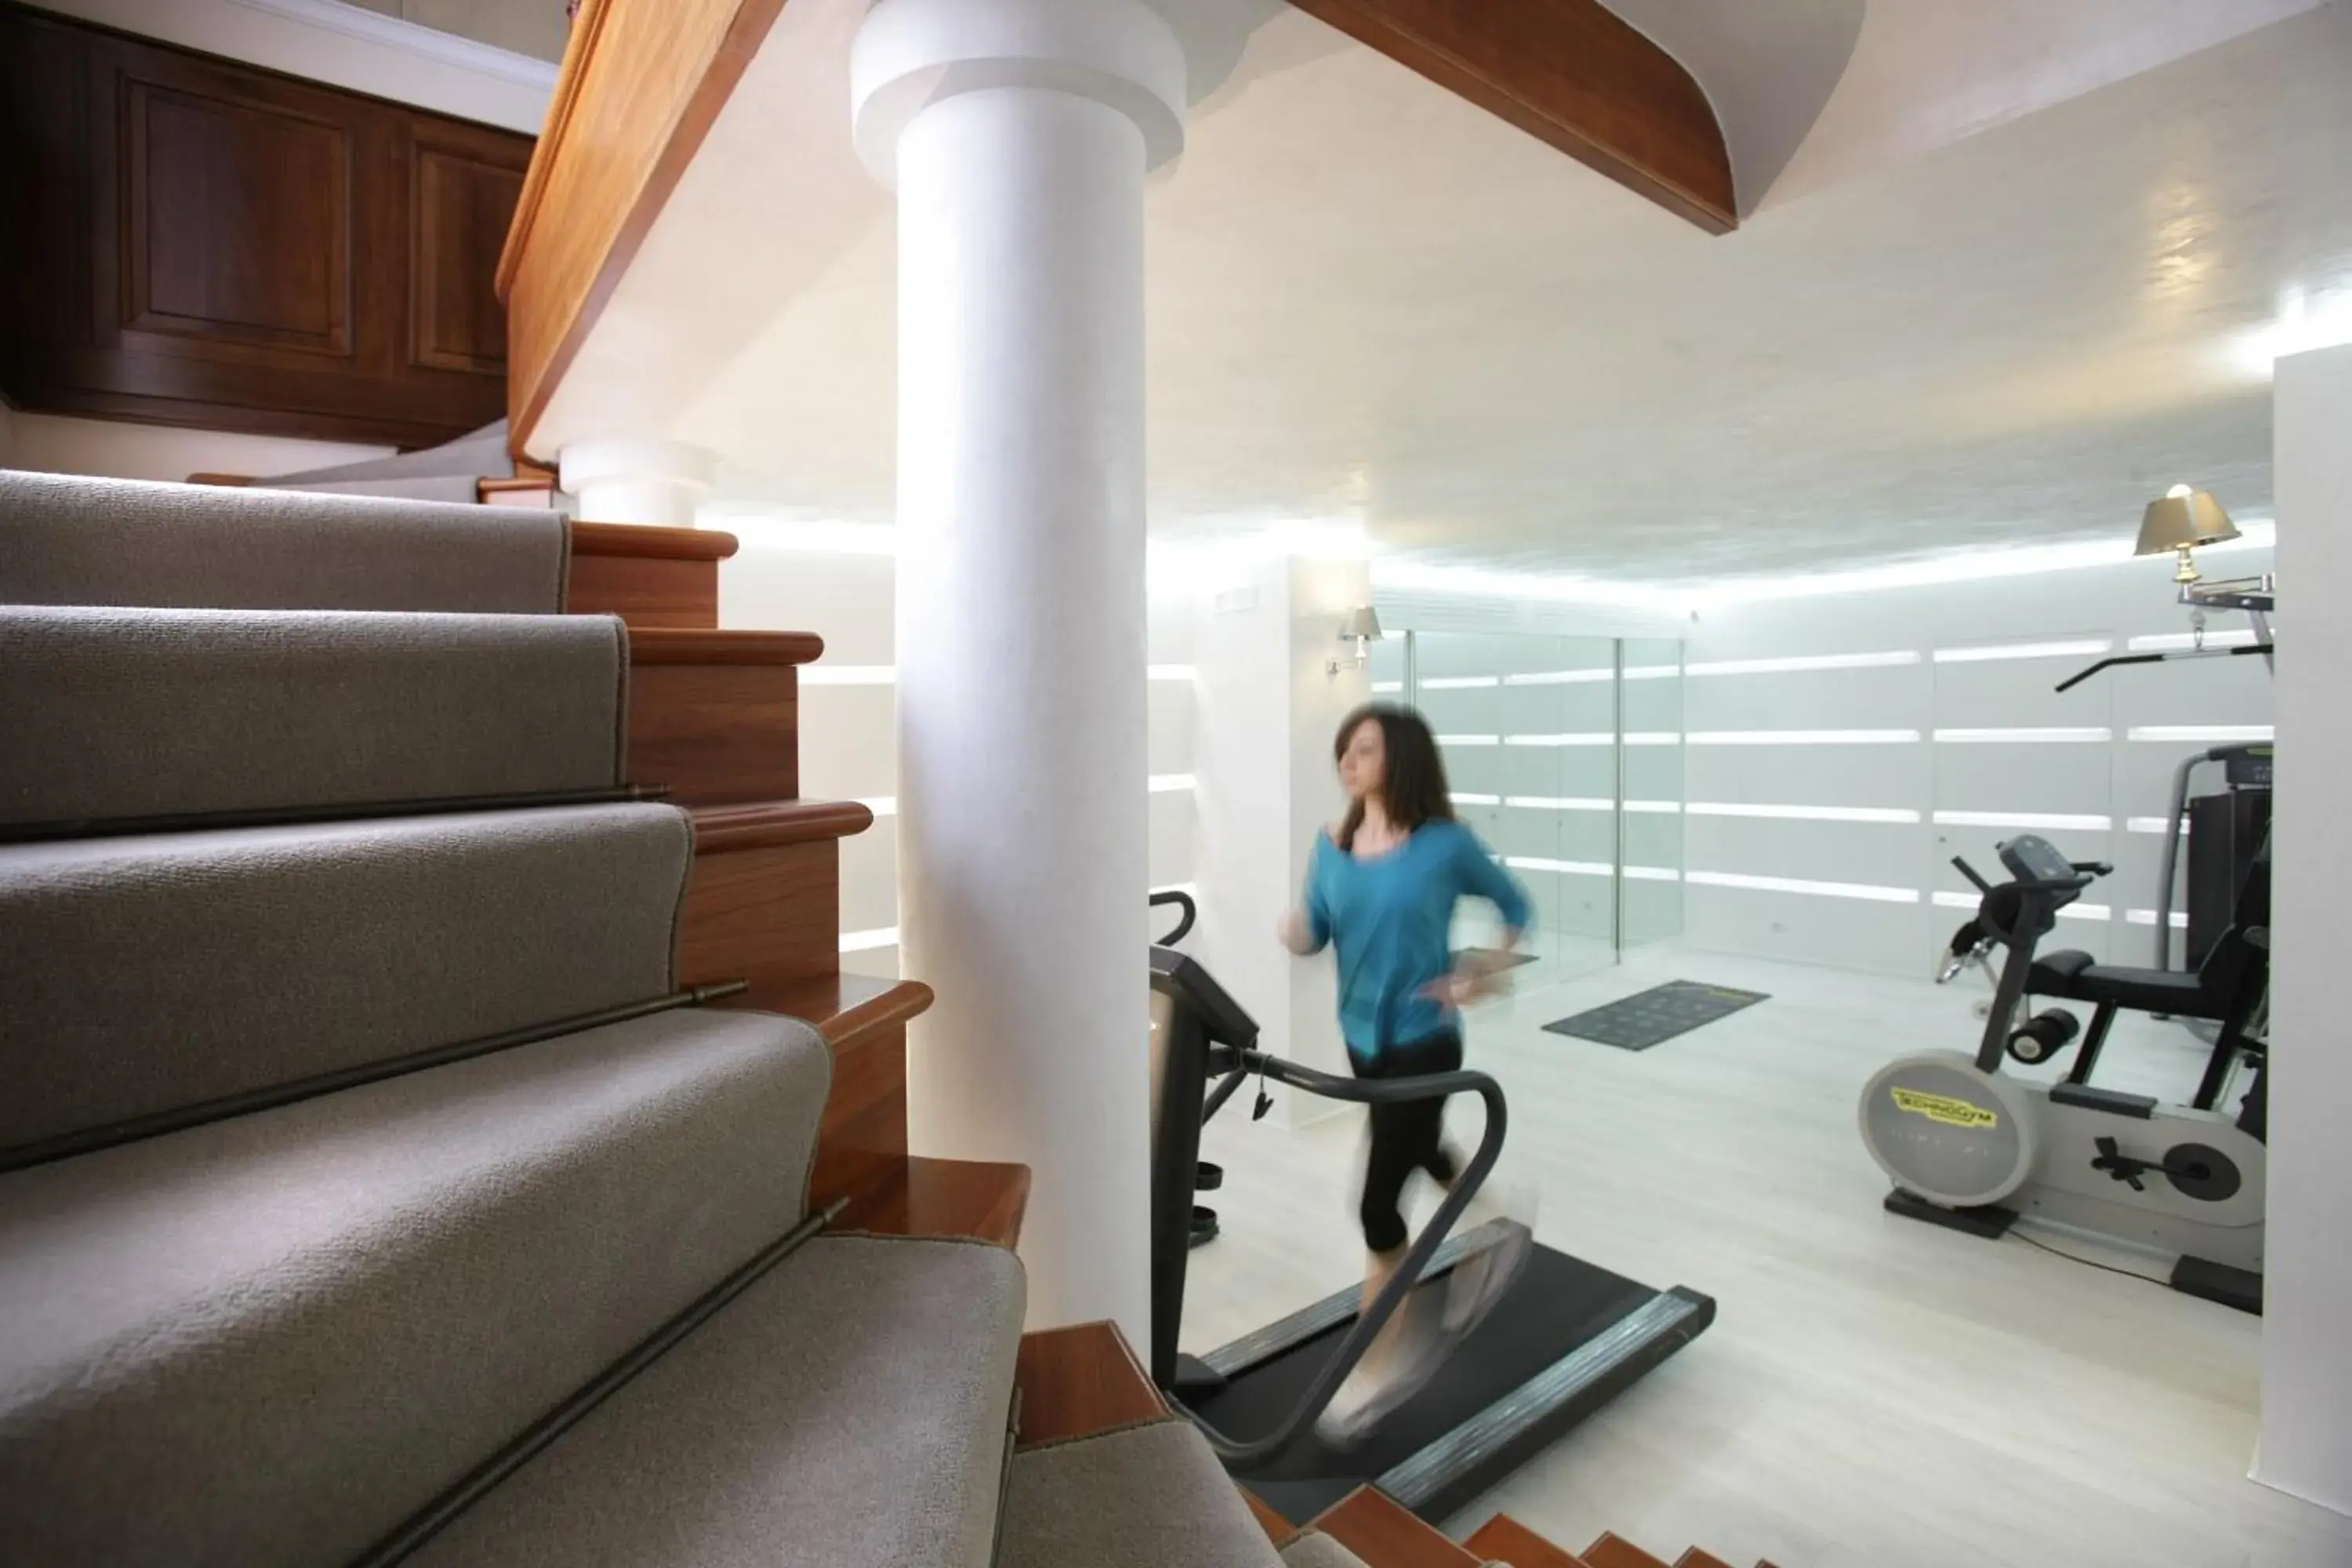 Fitness centre/facilities in Palazzo del Corso - Boutique Hotel